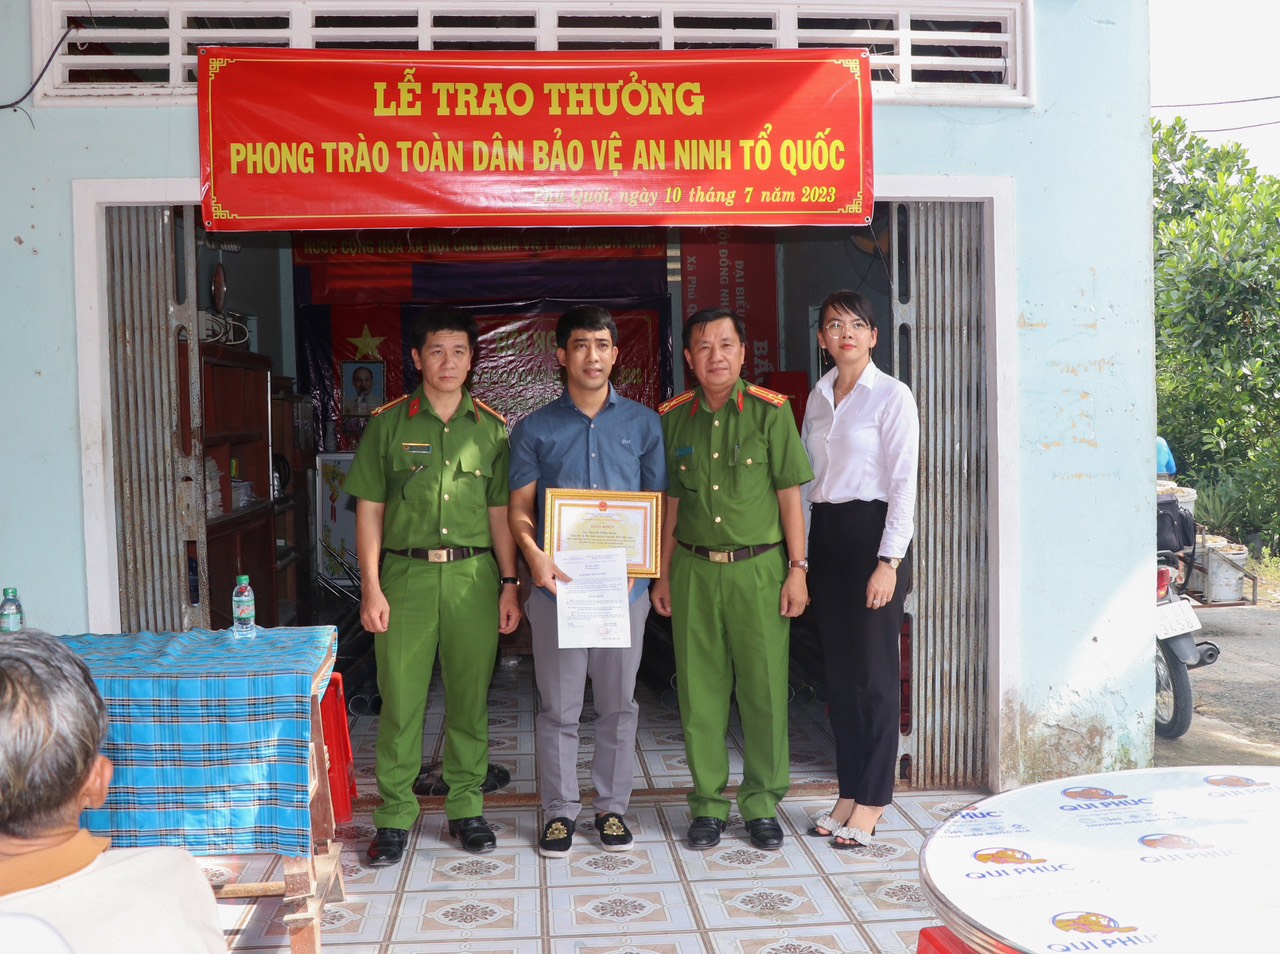 Đại diện Công an tỉnh Vĩnh Long trao thưởng và giấy khen cho anh Đoàn.